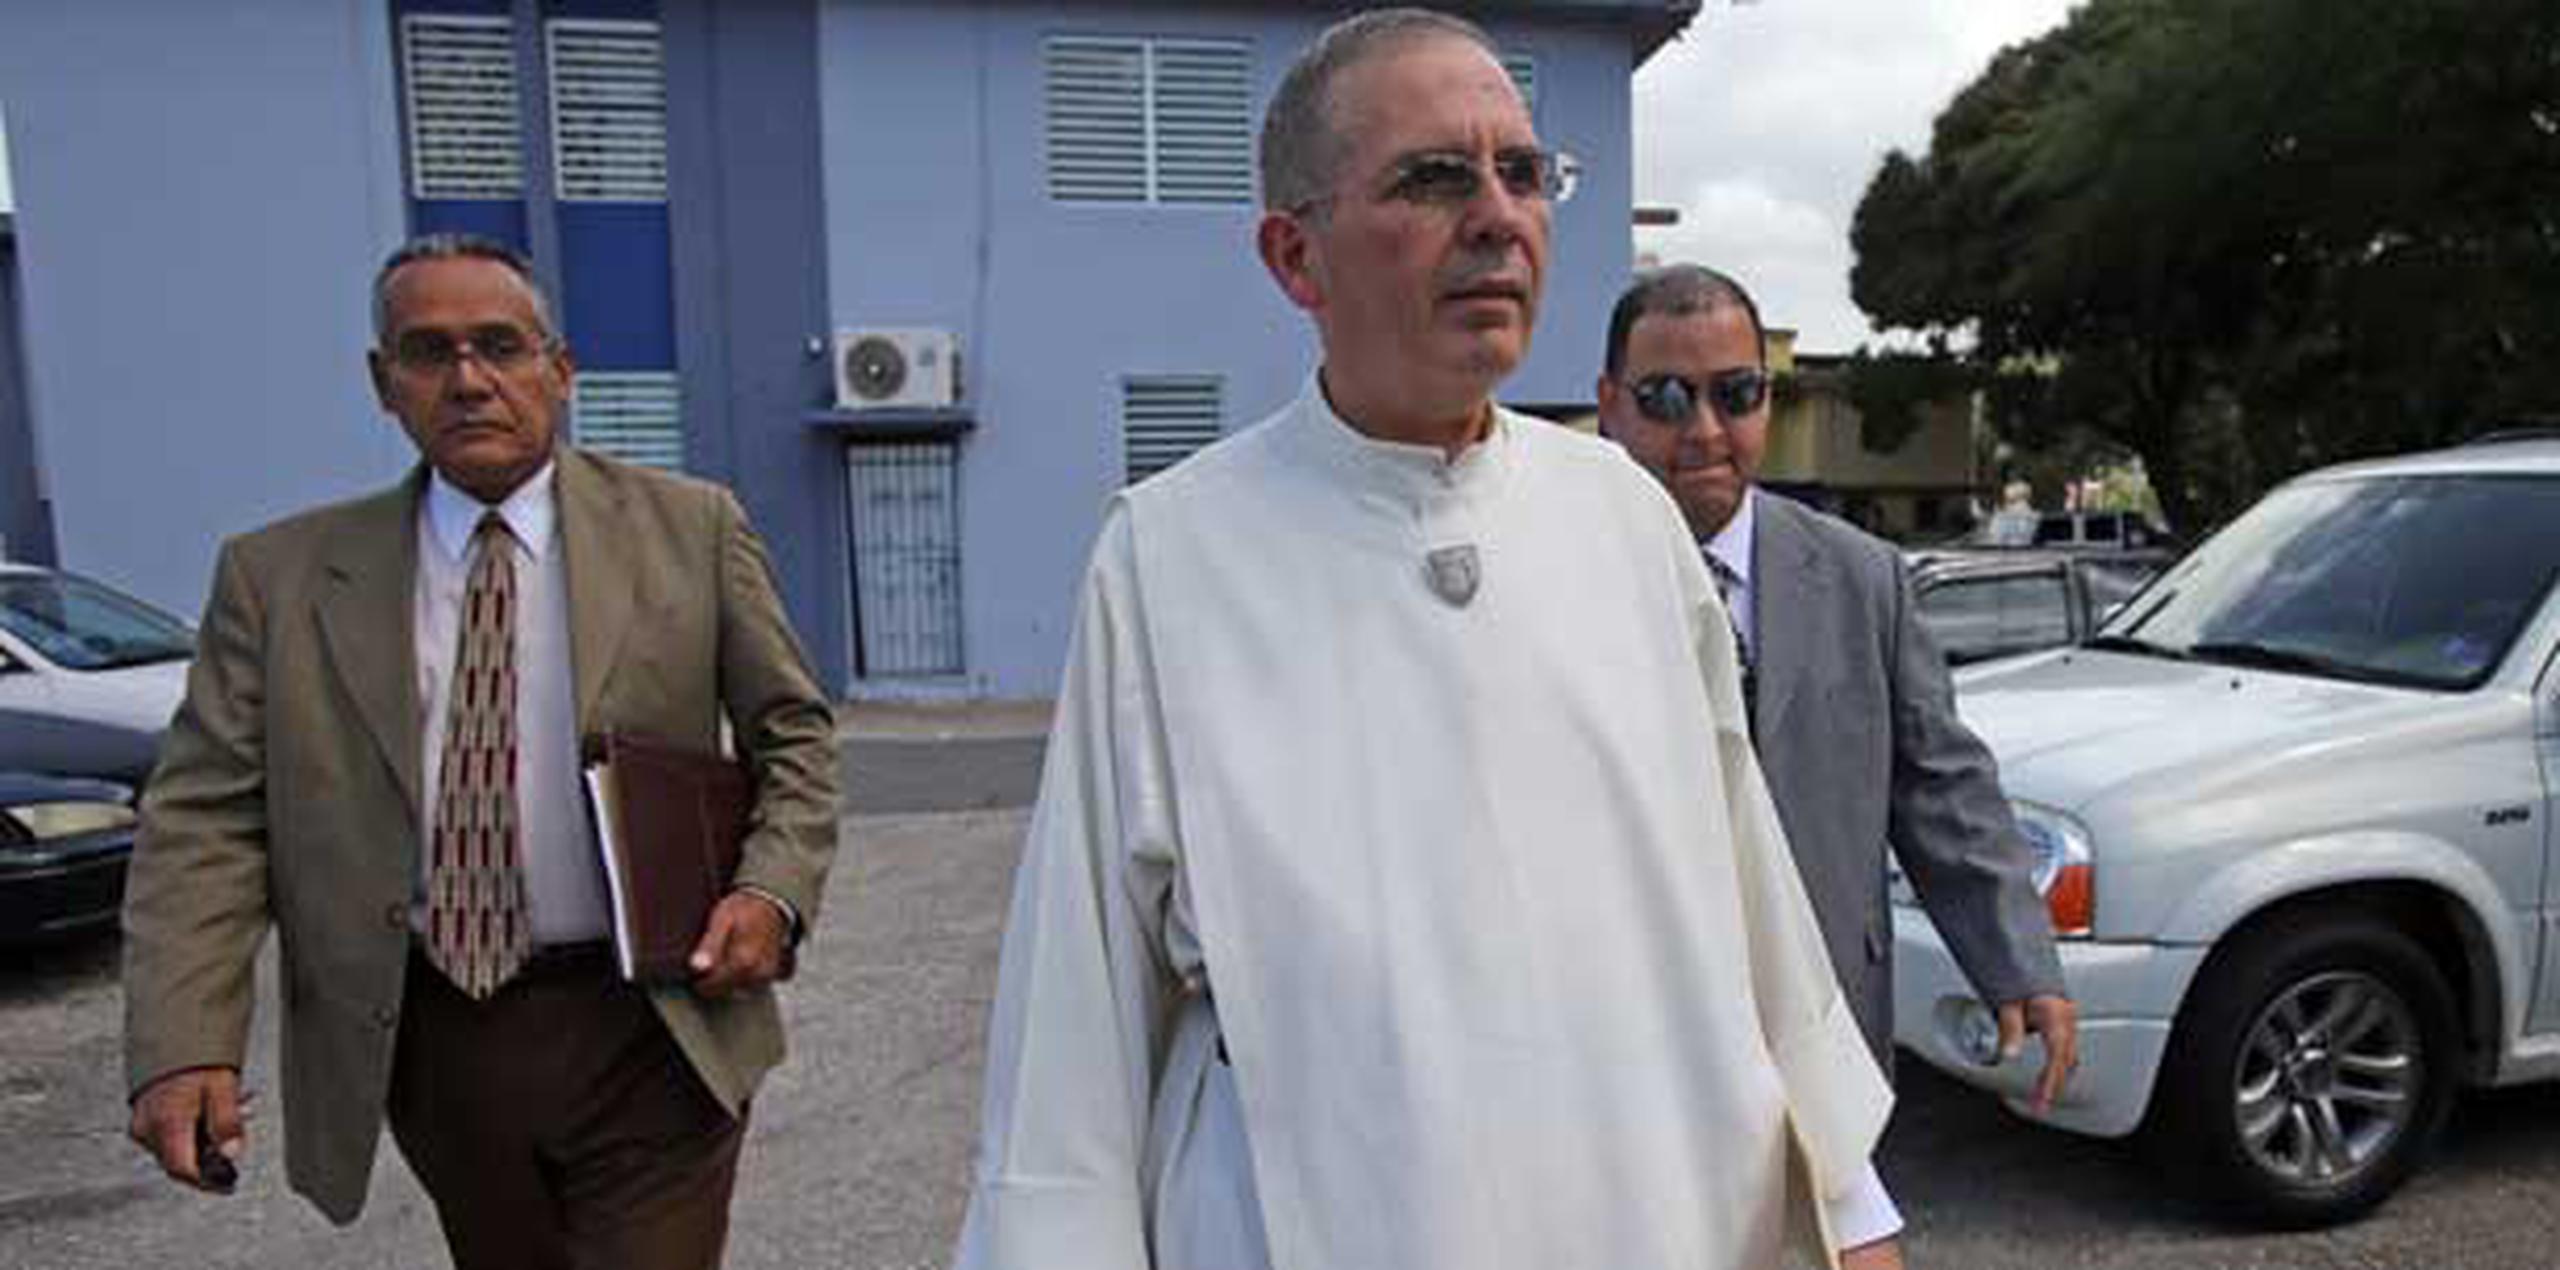 El vicario general de la Diócesis de Arecibo, Luis A. Colón Rivera, acudió al CIC acompañado por el abogado Jesús Peluyera. (lino.prieto@gfrmedia.com)